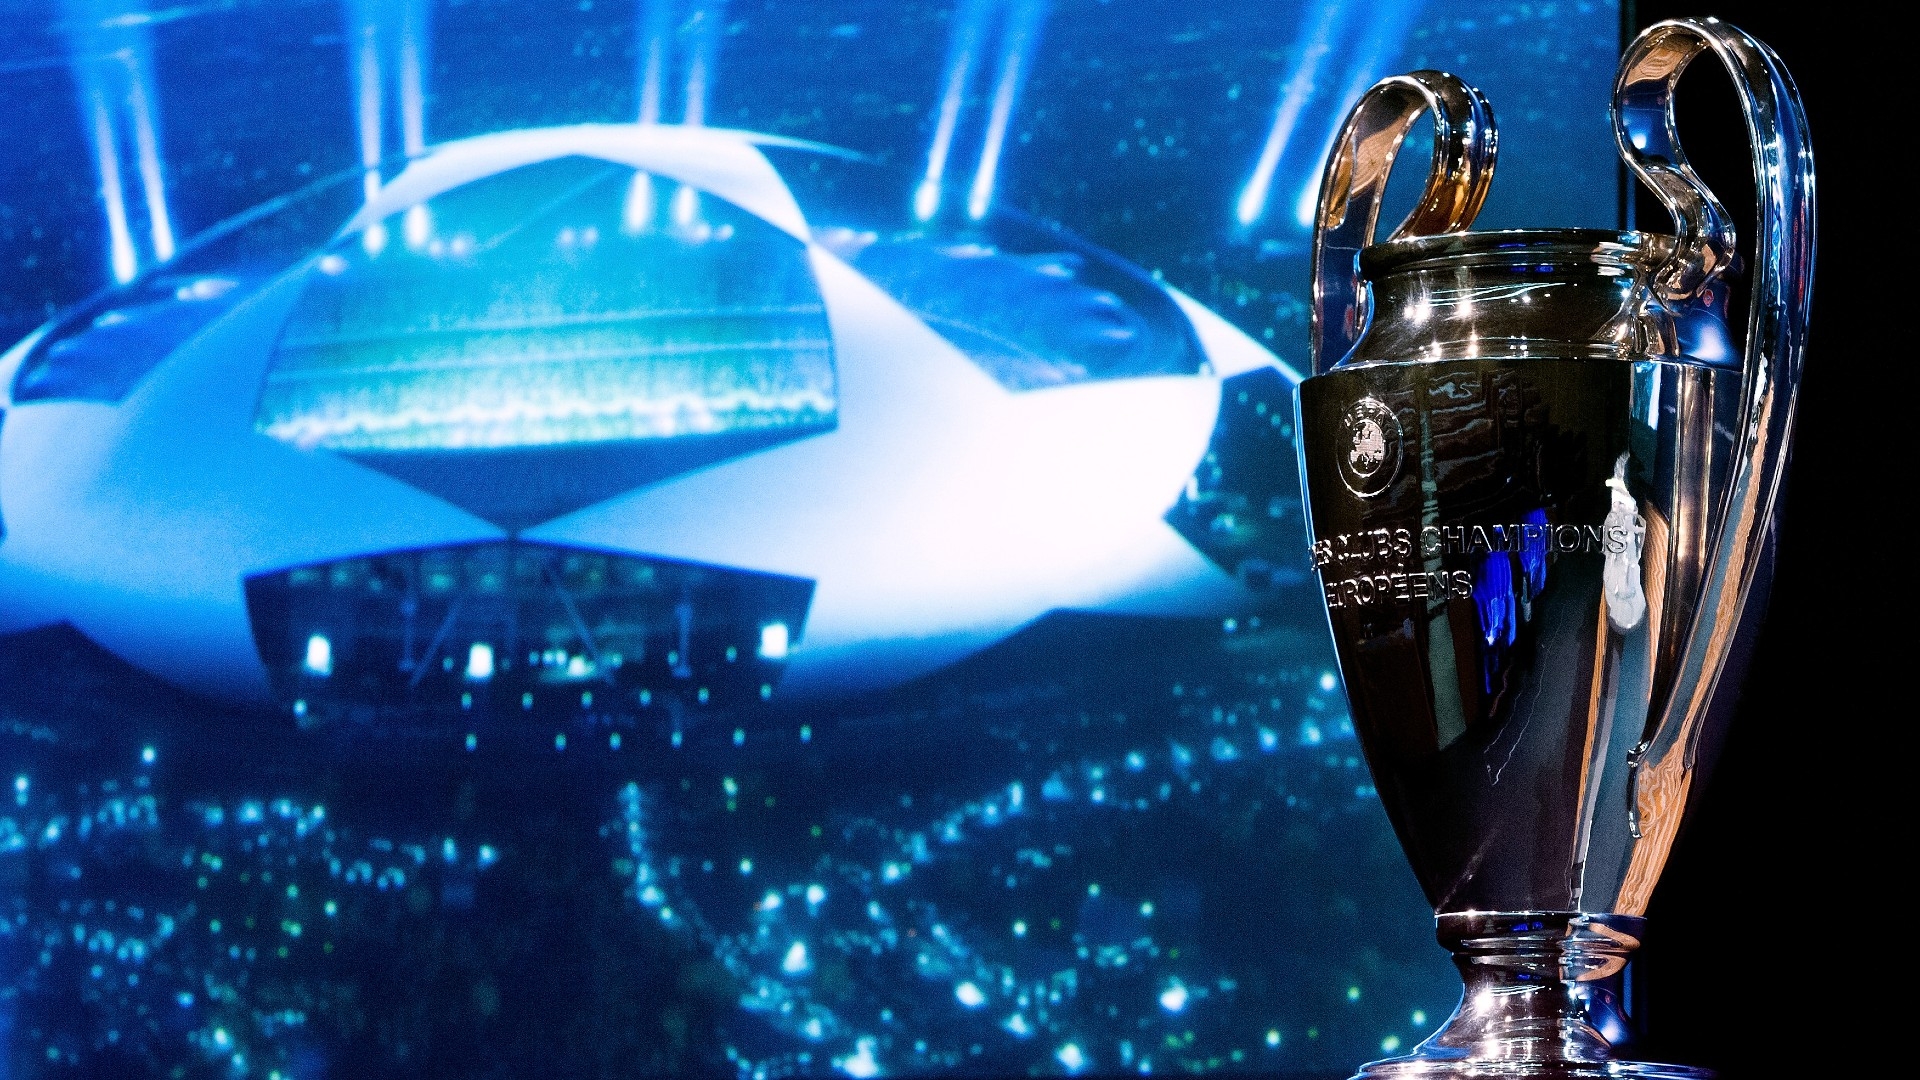 UEFA define confrontos das quartas de final da Champions League 2022/23